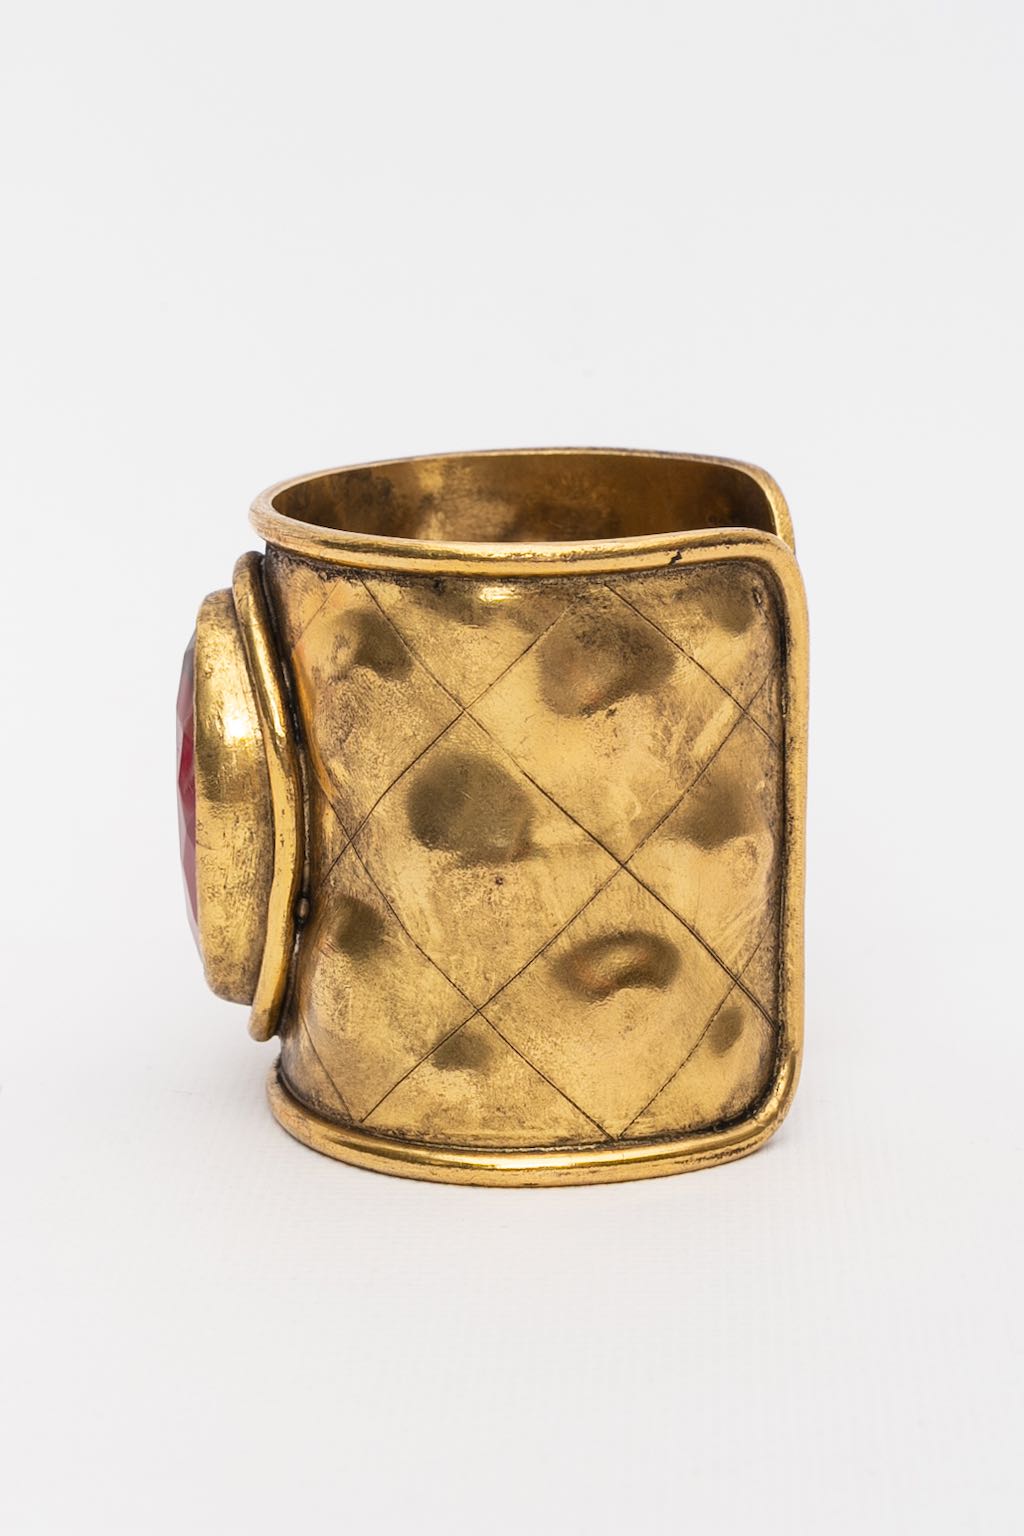 Chanel gilded metal cuff bracelet with ruby rhinestone